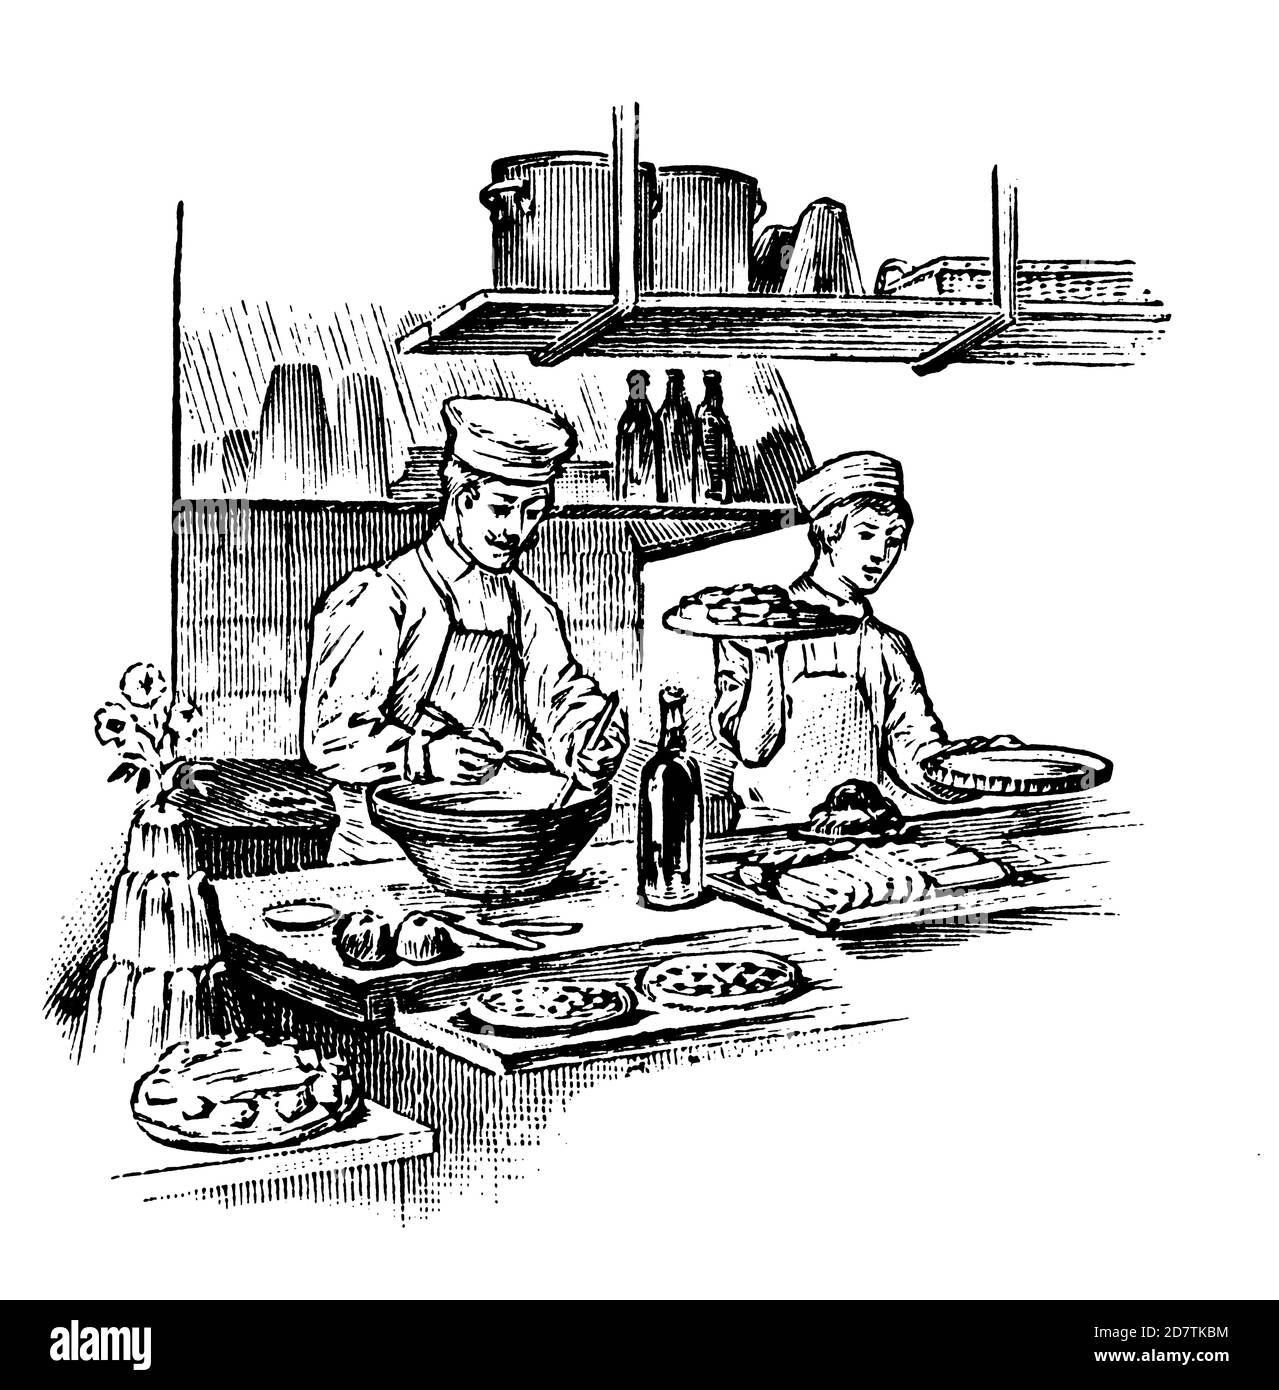 gravure du xixe siècle de deux hommes travaillant dans un restaurant (isolé sur blanc). Publié dans spécimens des divers caractères et vignettes typographiques Banque D'Images